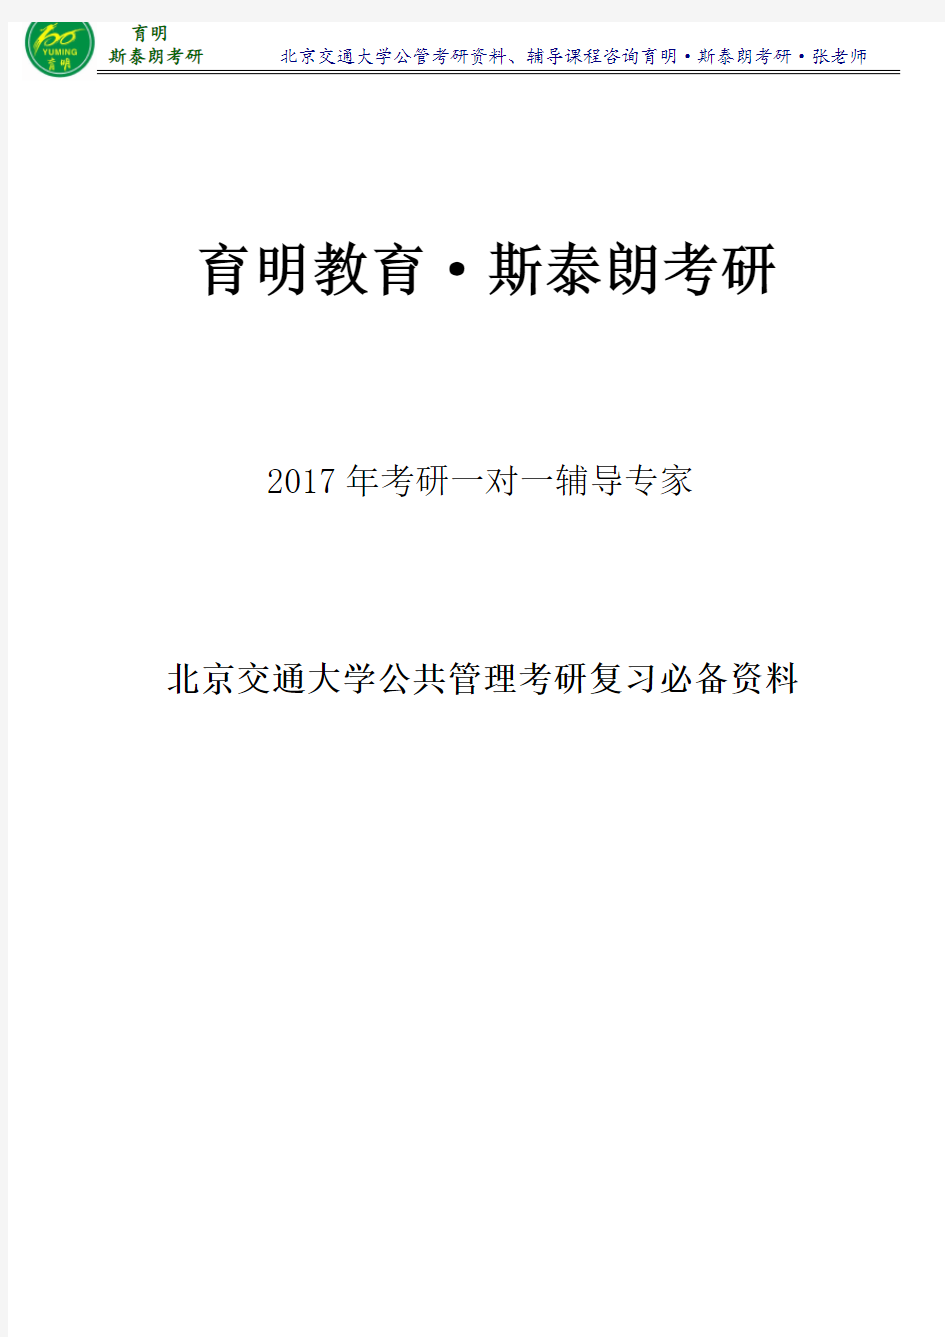 2017年北京交通大学公共管理专业陈振明《公共管理学》考研笔记整理2-育明·斯泰朗考研考博